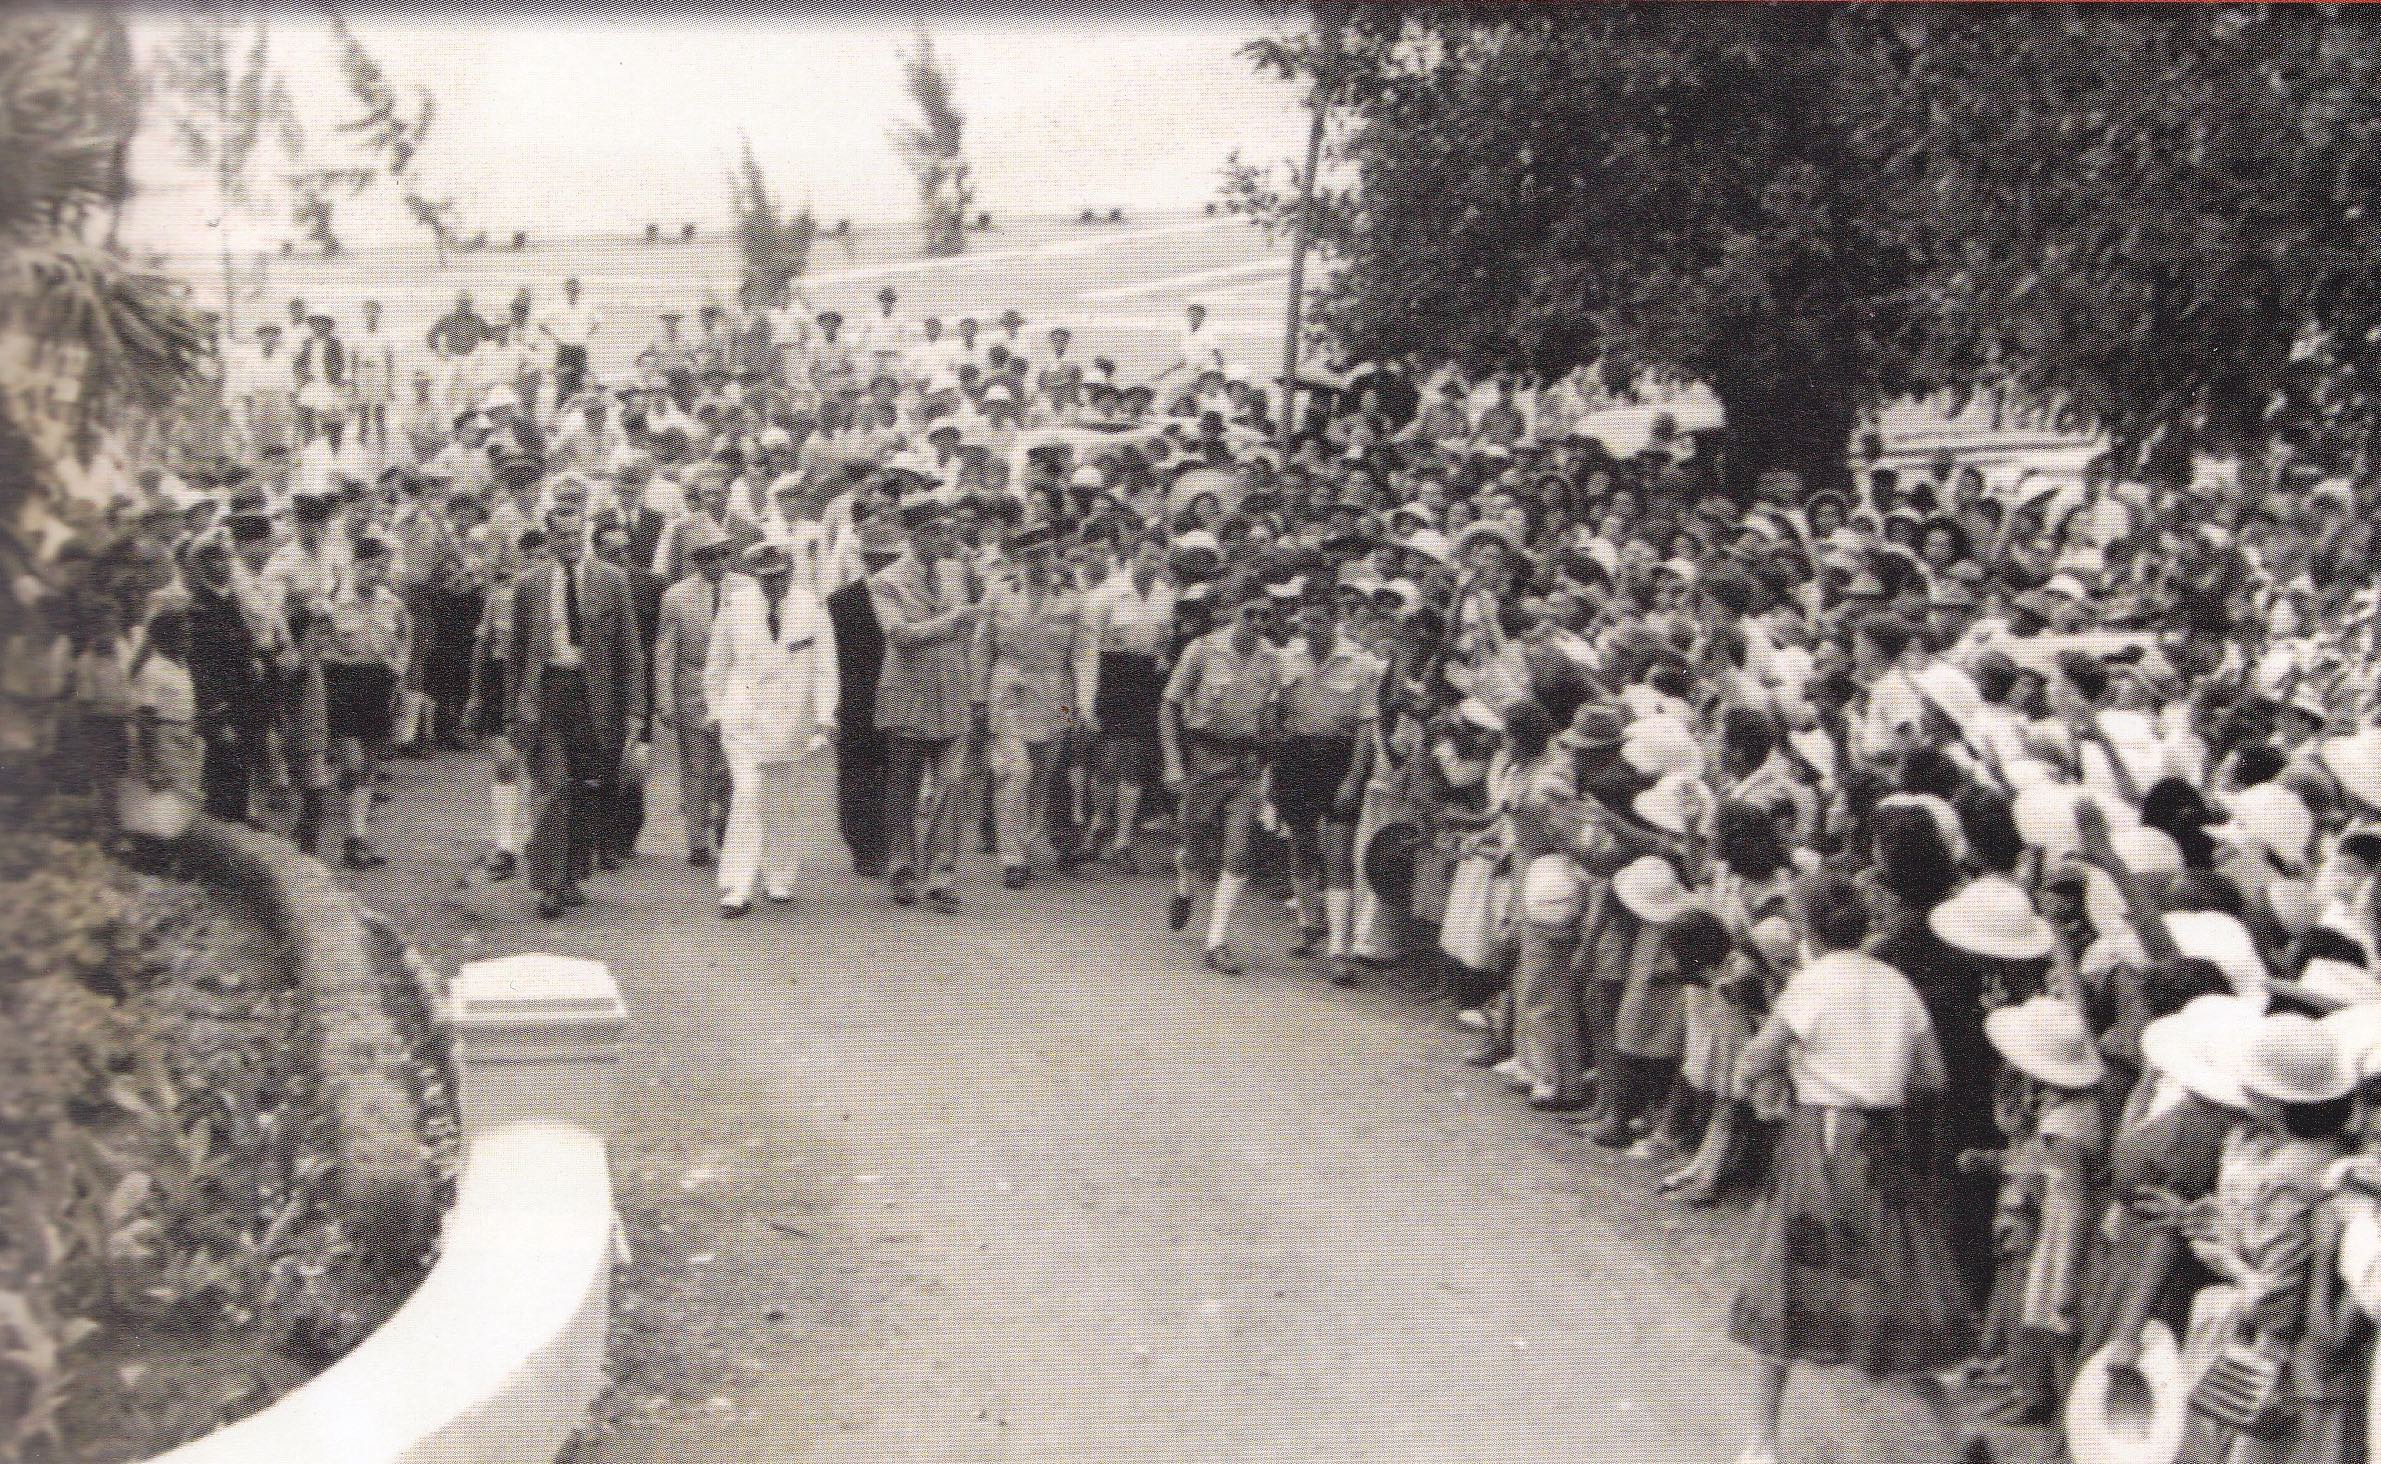 Le général de Gaulle marche en direction de la préfecture et salue une foule compacte (collection Michel Chung-Poo-Lun dans C’était hier de Daniel Vaxellaire, édition Orphie)